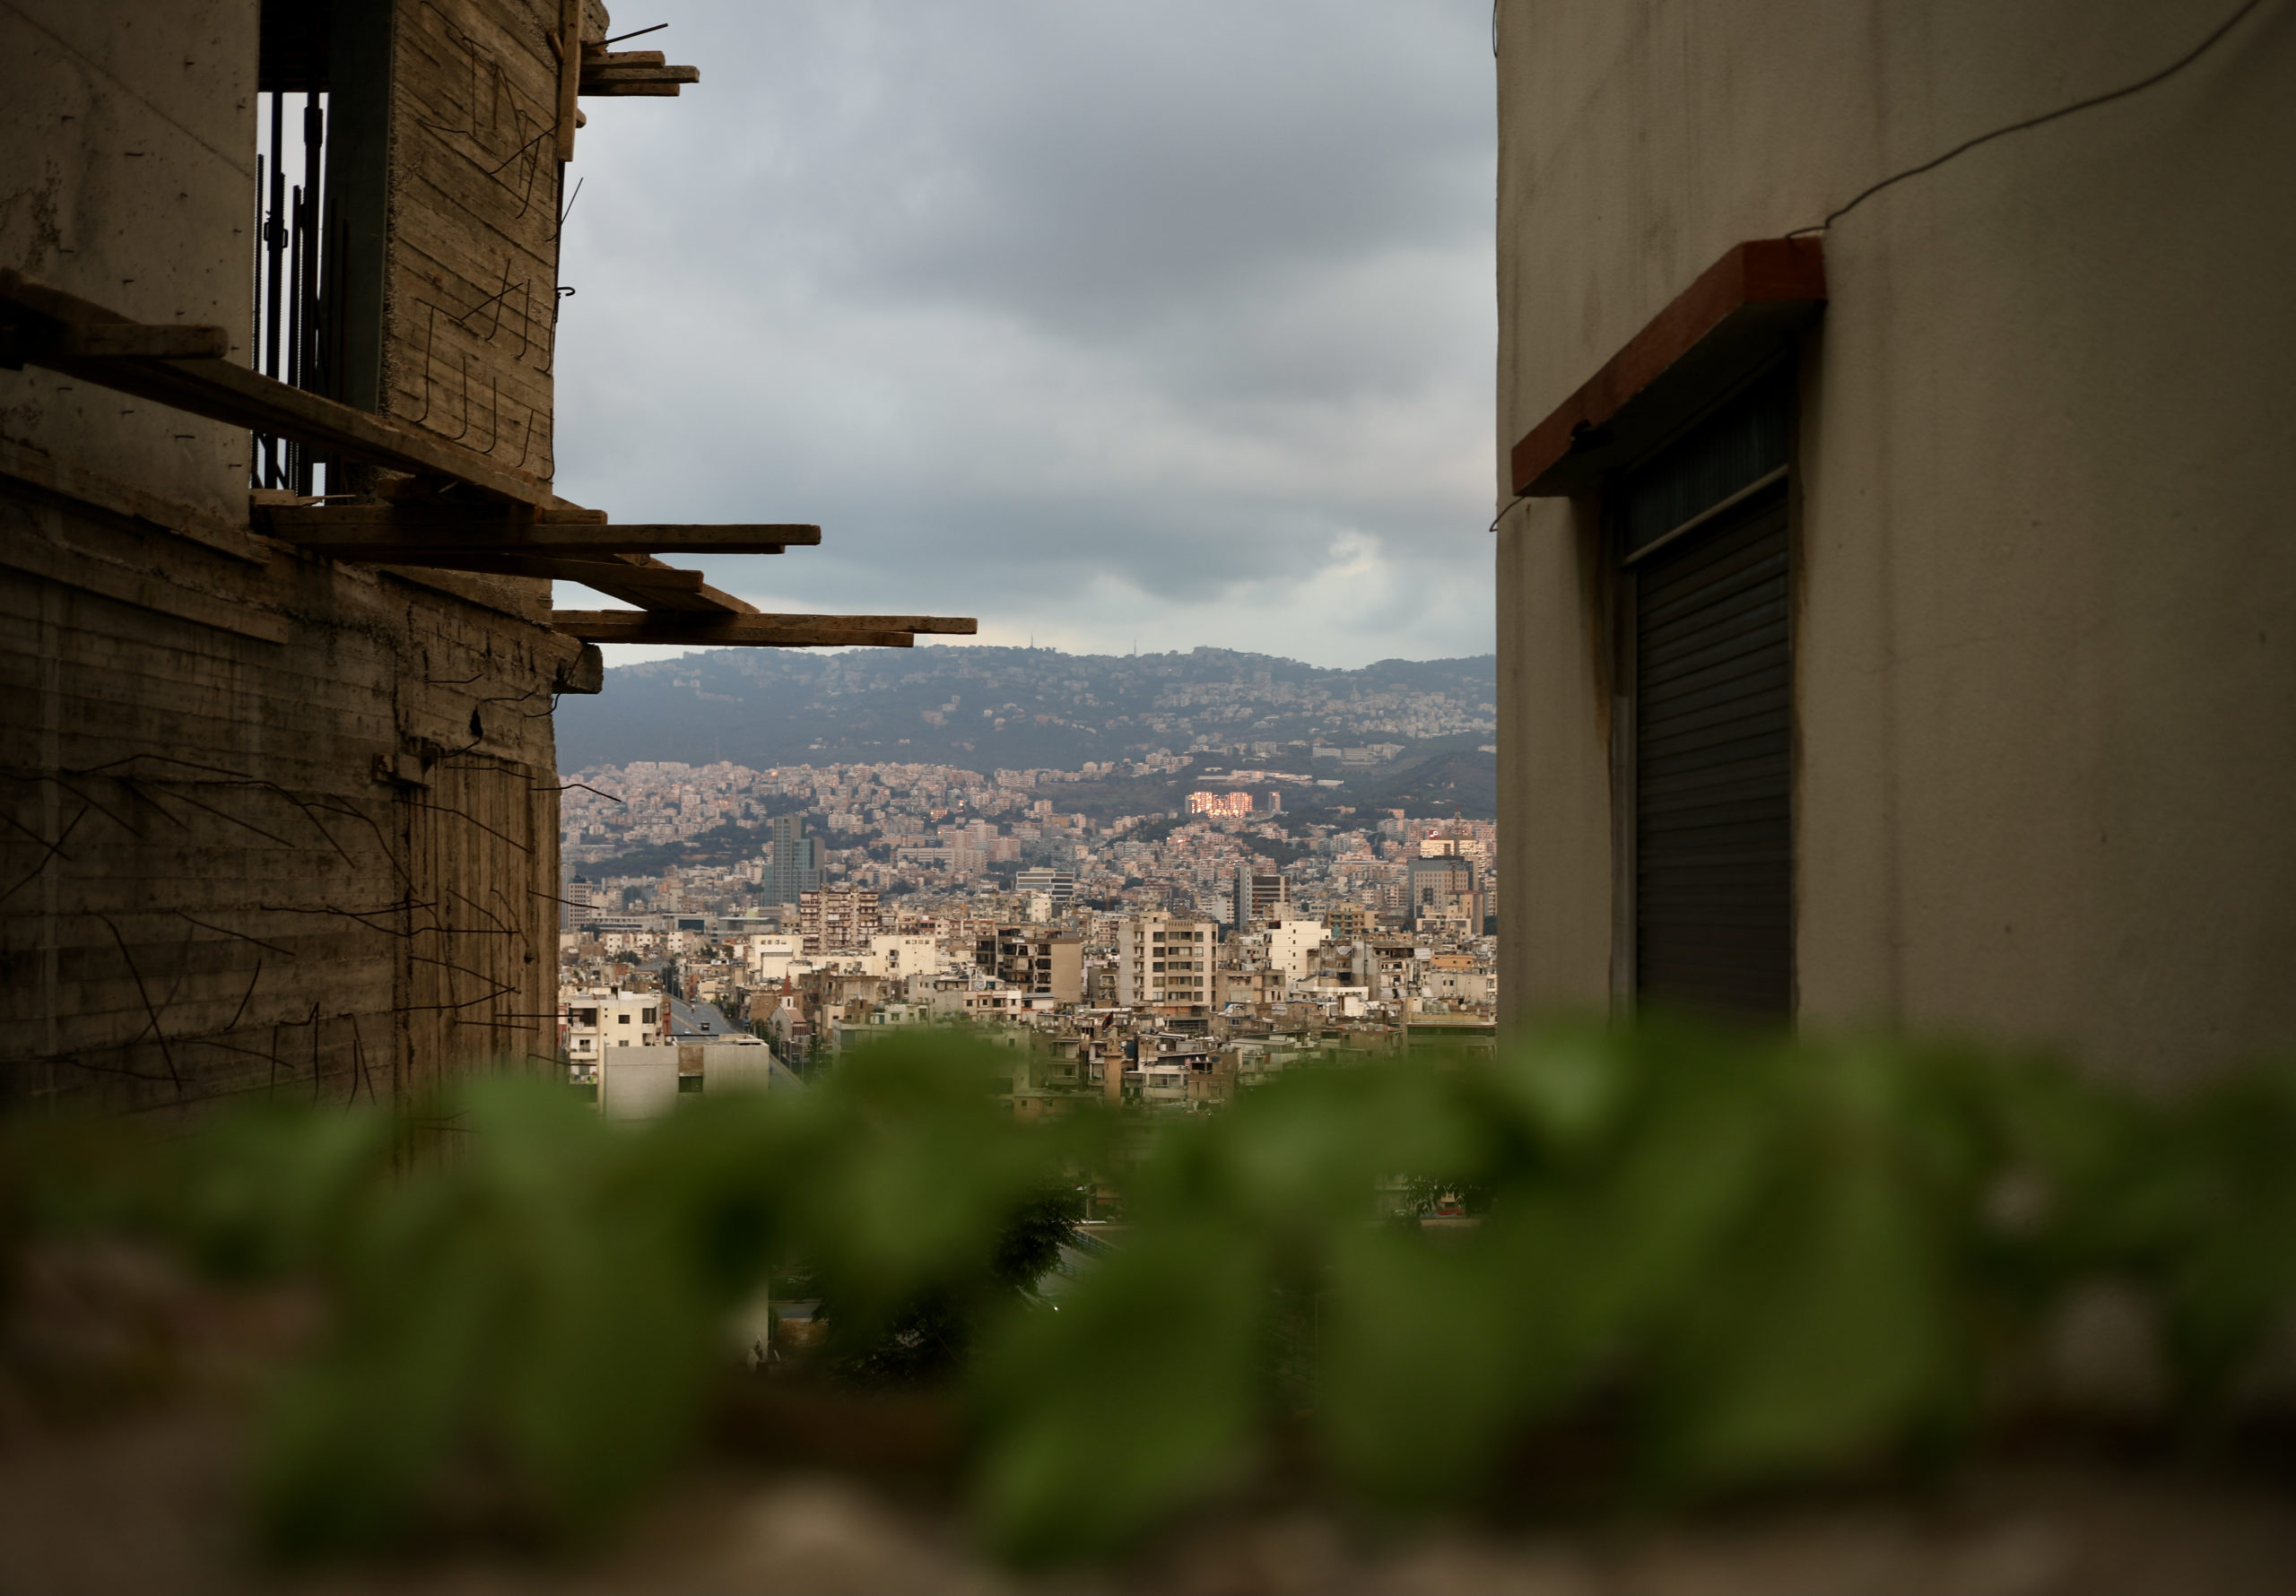 “Une intense métamorphose” par Matthieu Karam à Beyrouth